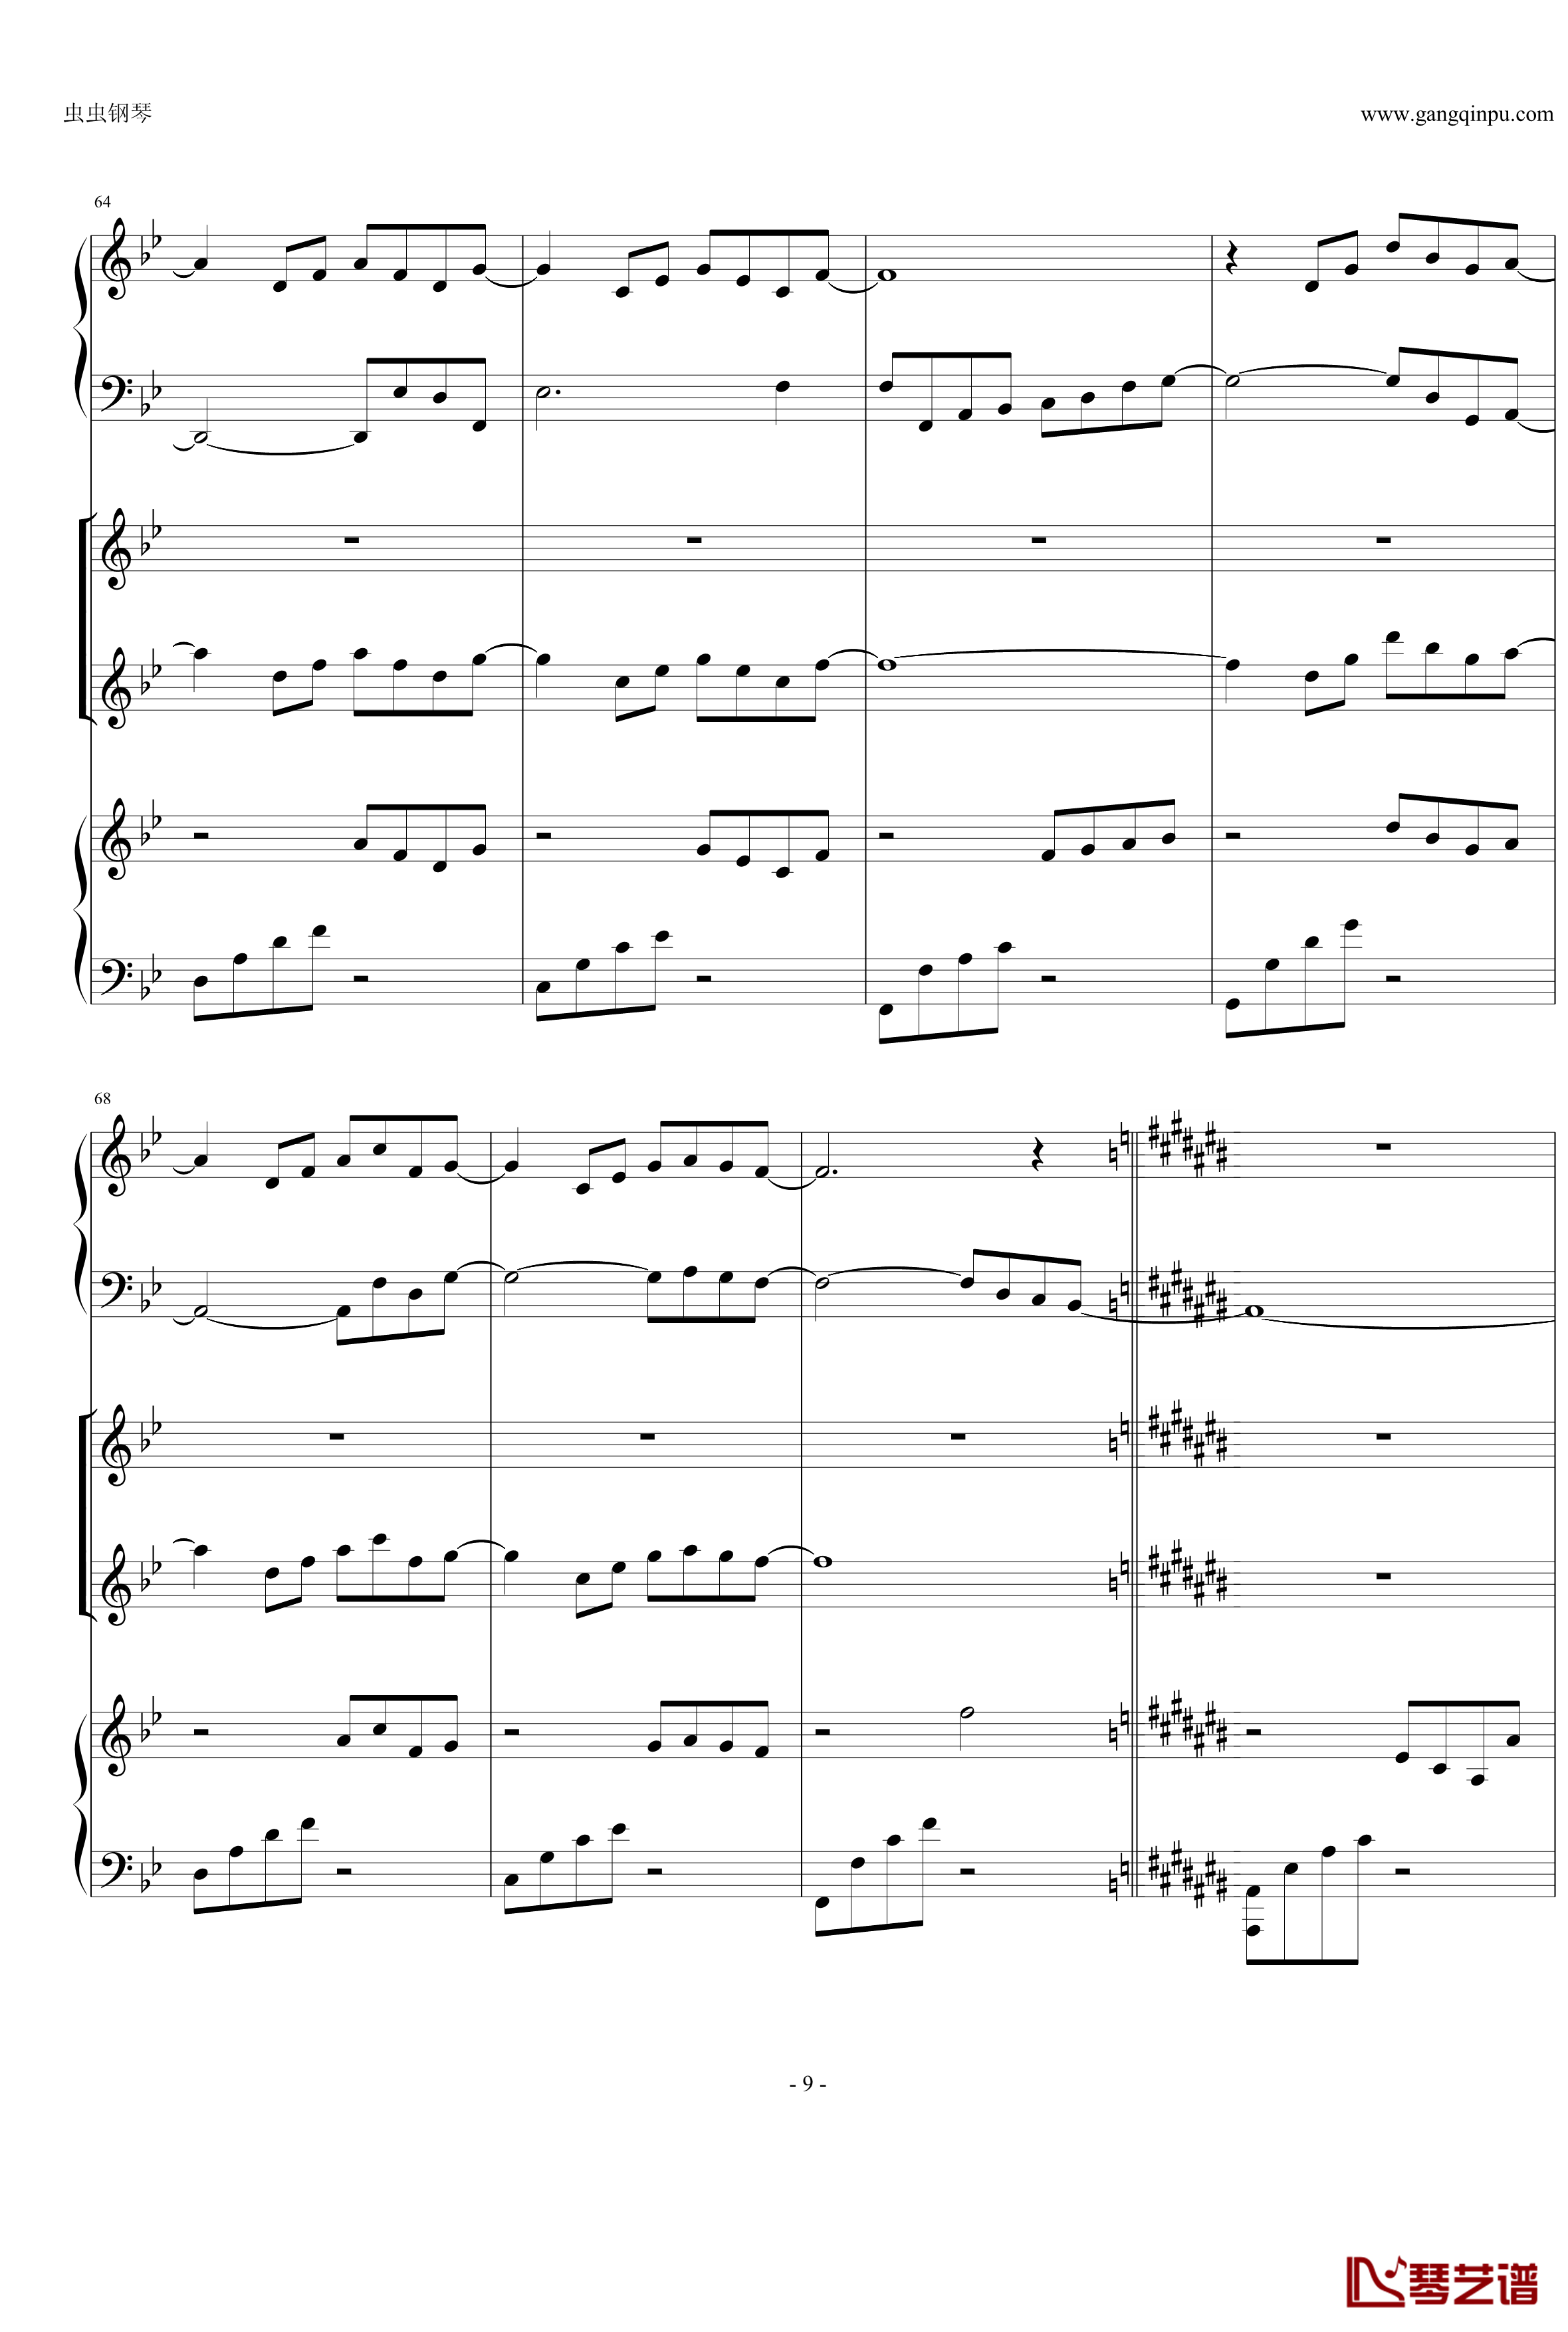 Anymusic钢琴谱-机械乐器乐-第三乐章9